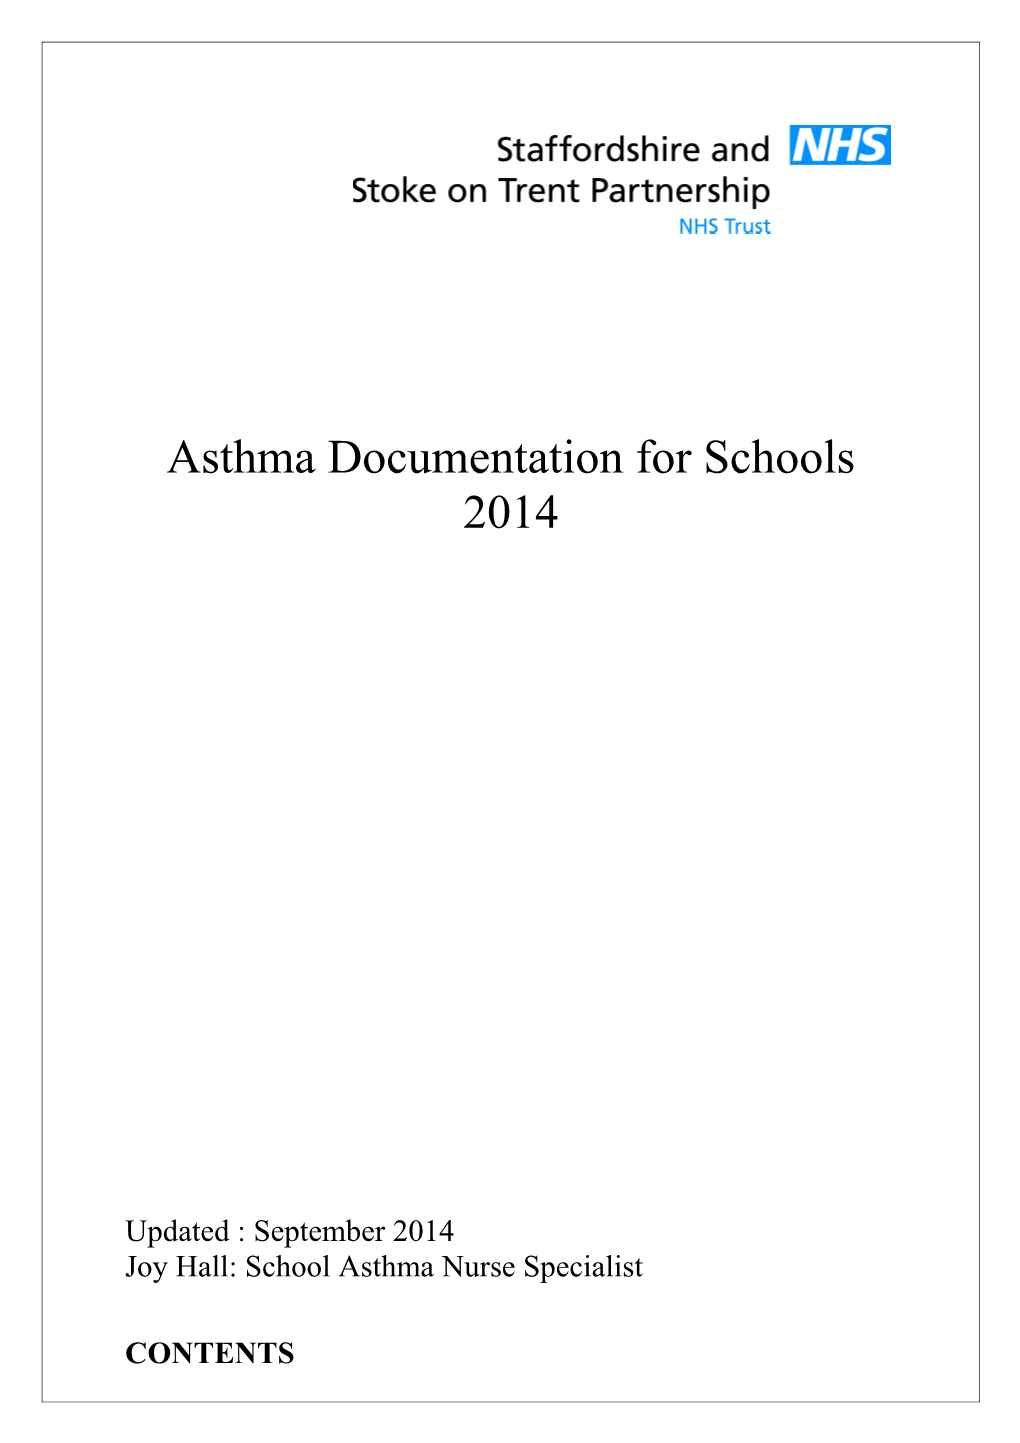 Asthma Documentation for Schools